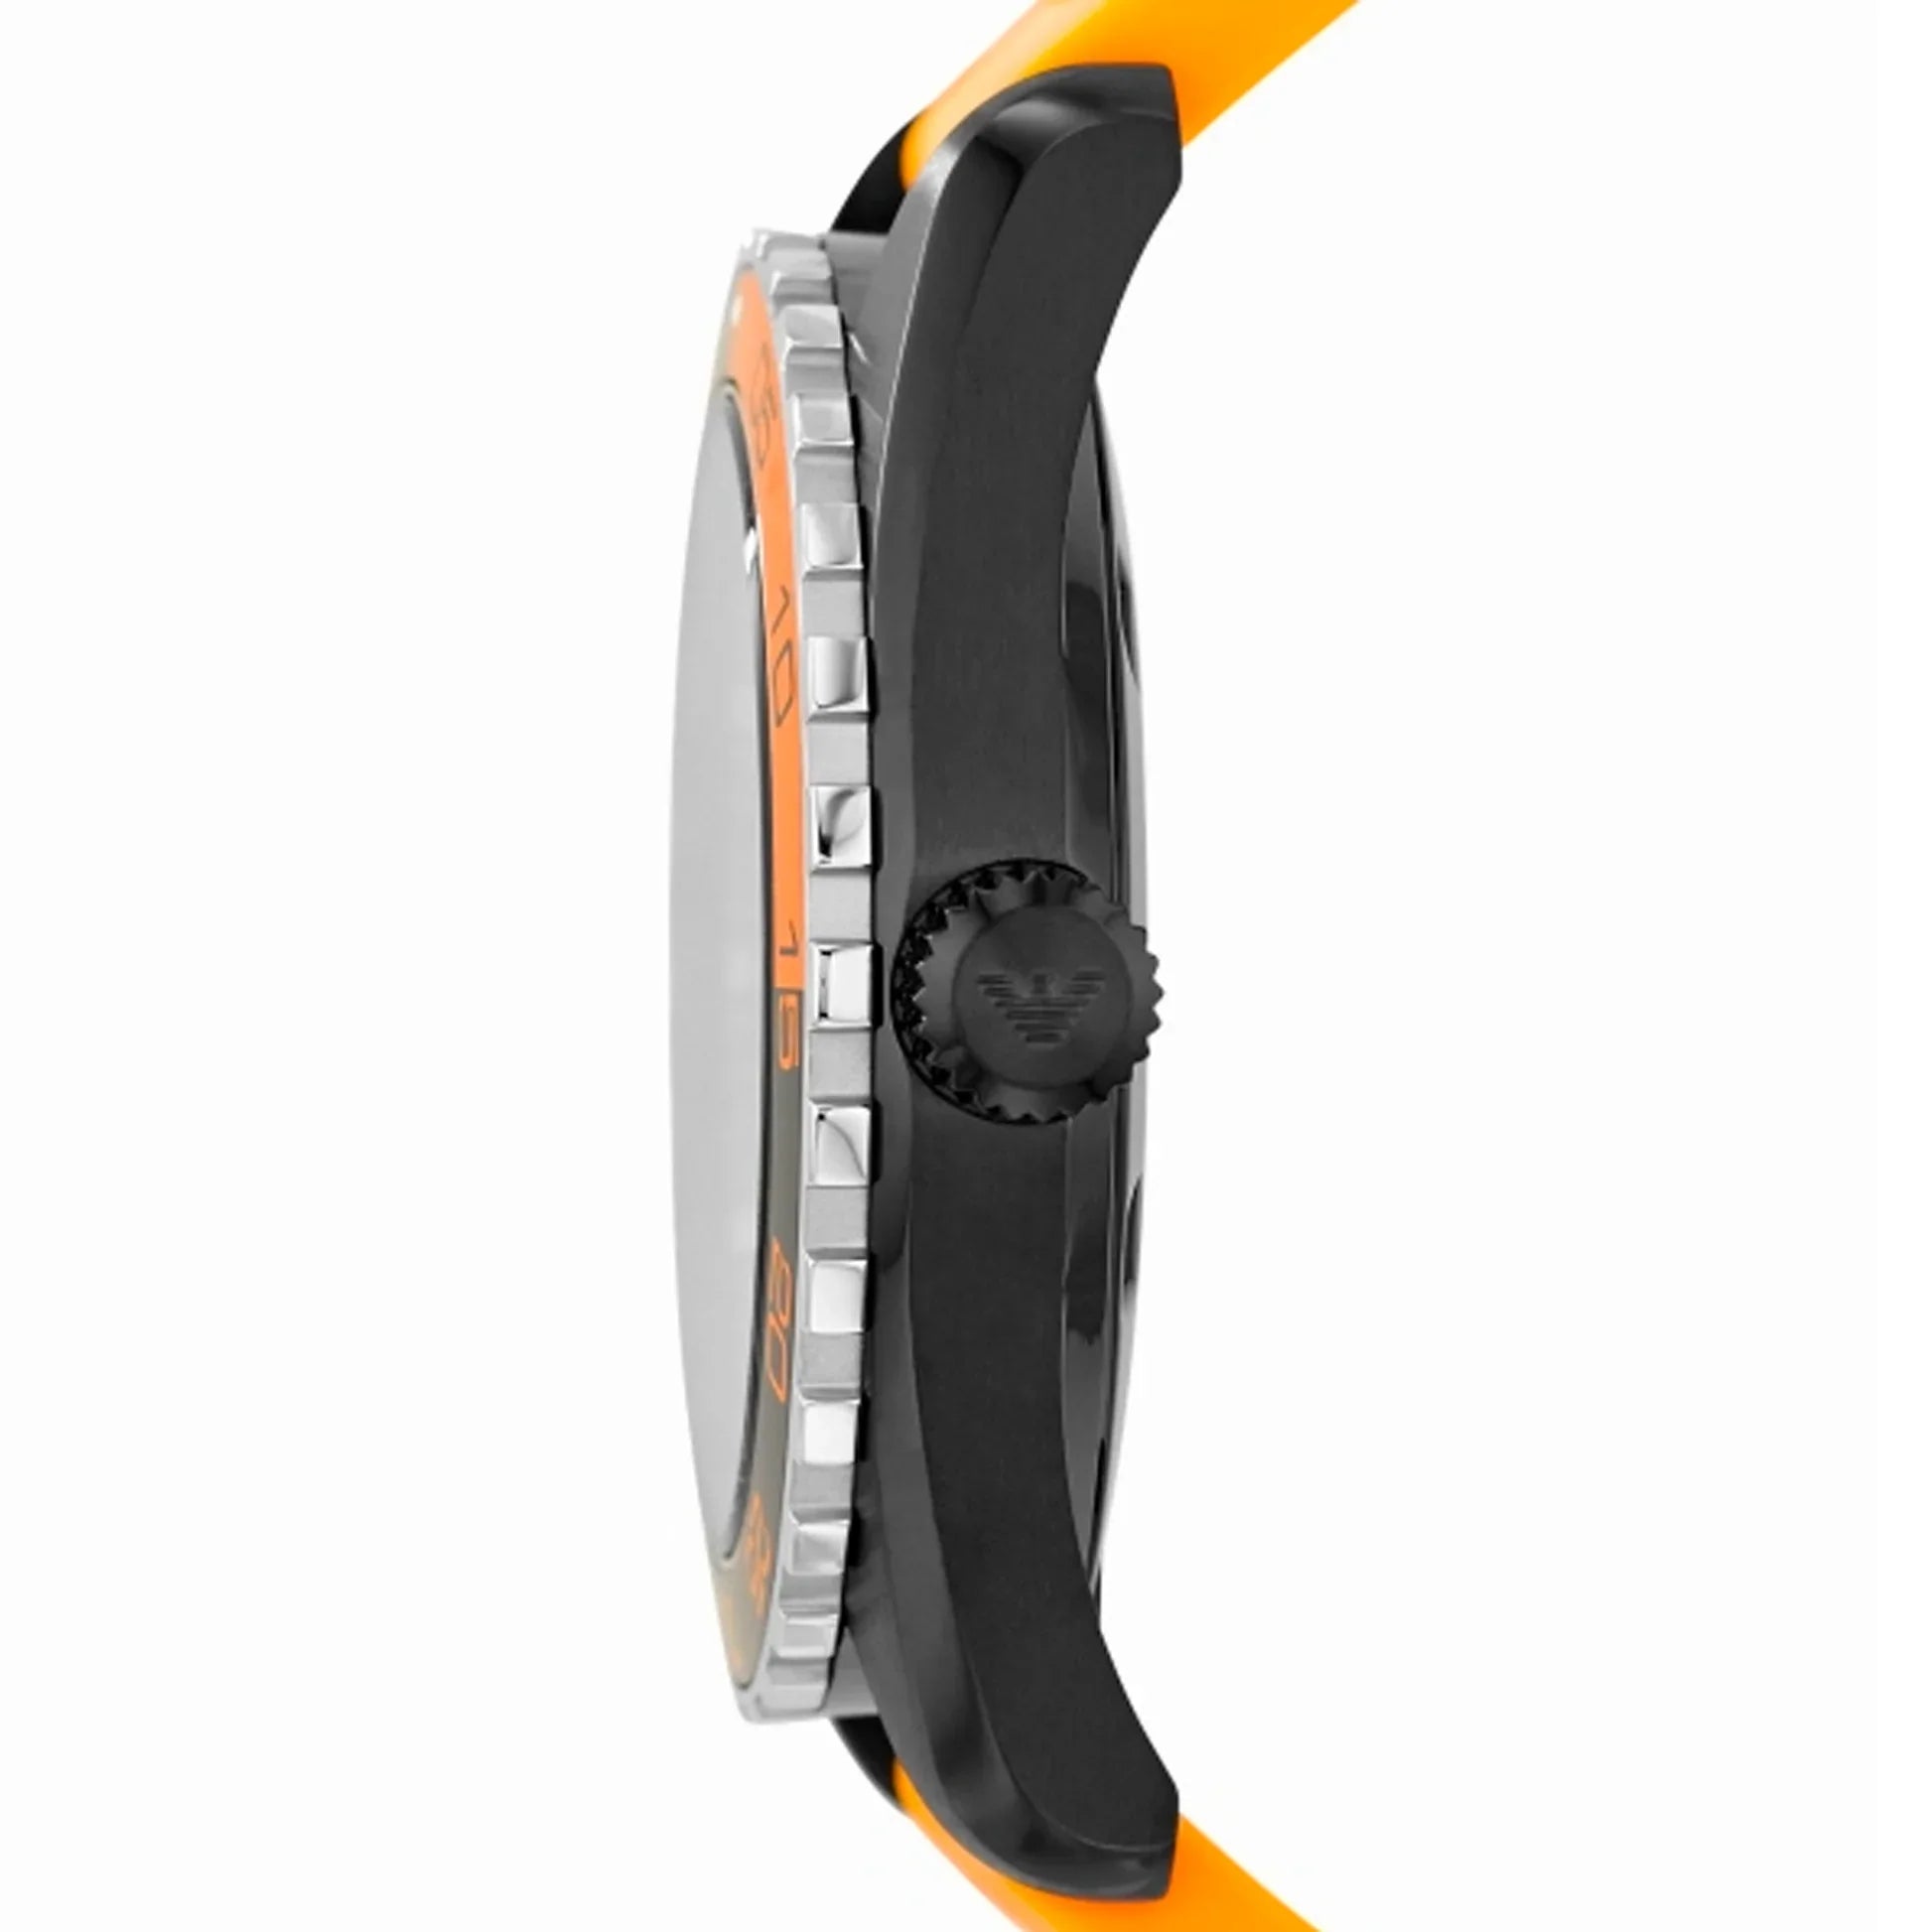 Emporio Armani Sportivo Quartz Black Dial Orange Rubber Strap Watch For Men - AR6046